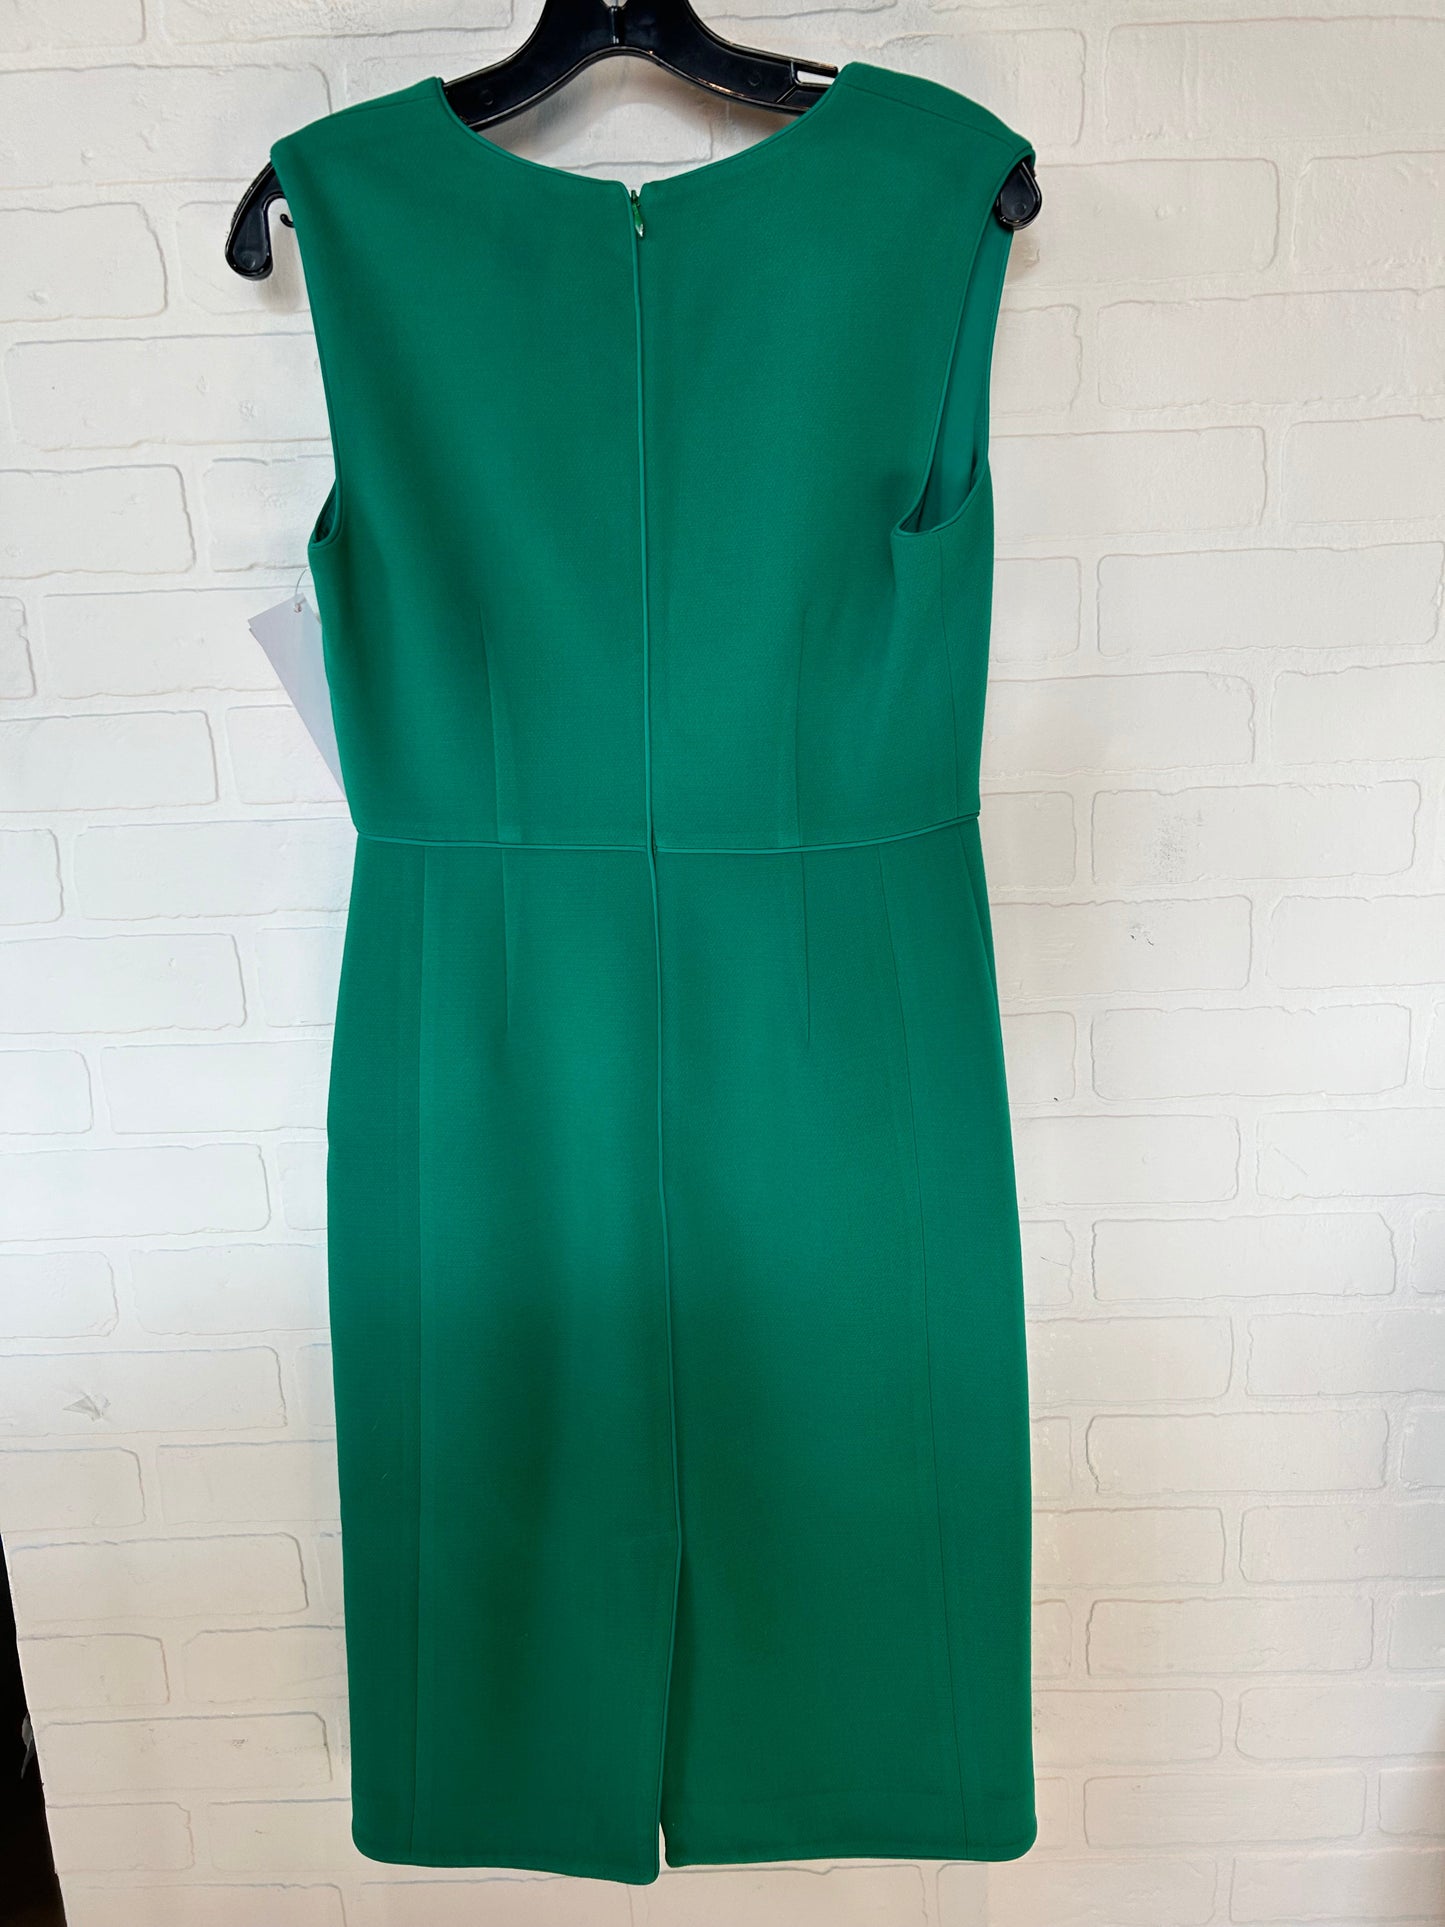 Green Dress Work Ann Taylor, Size Xs